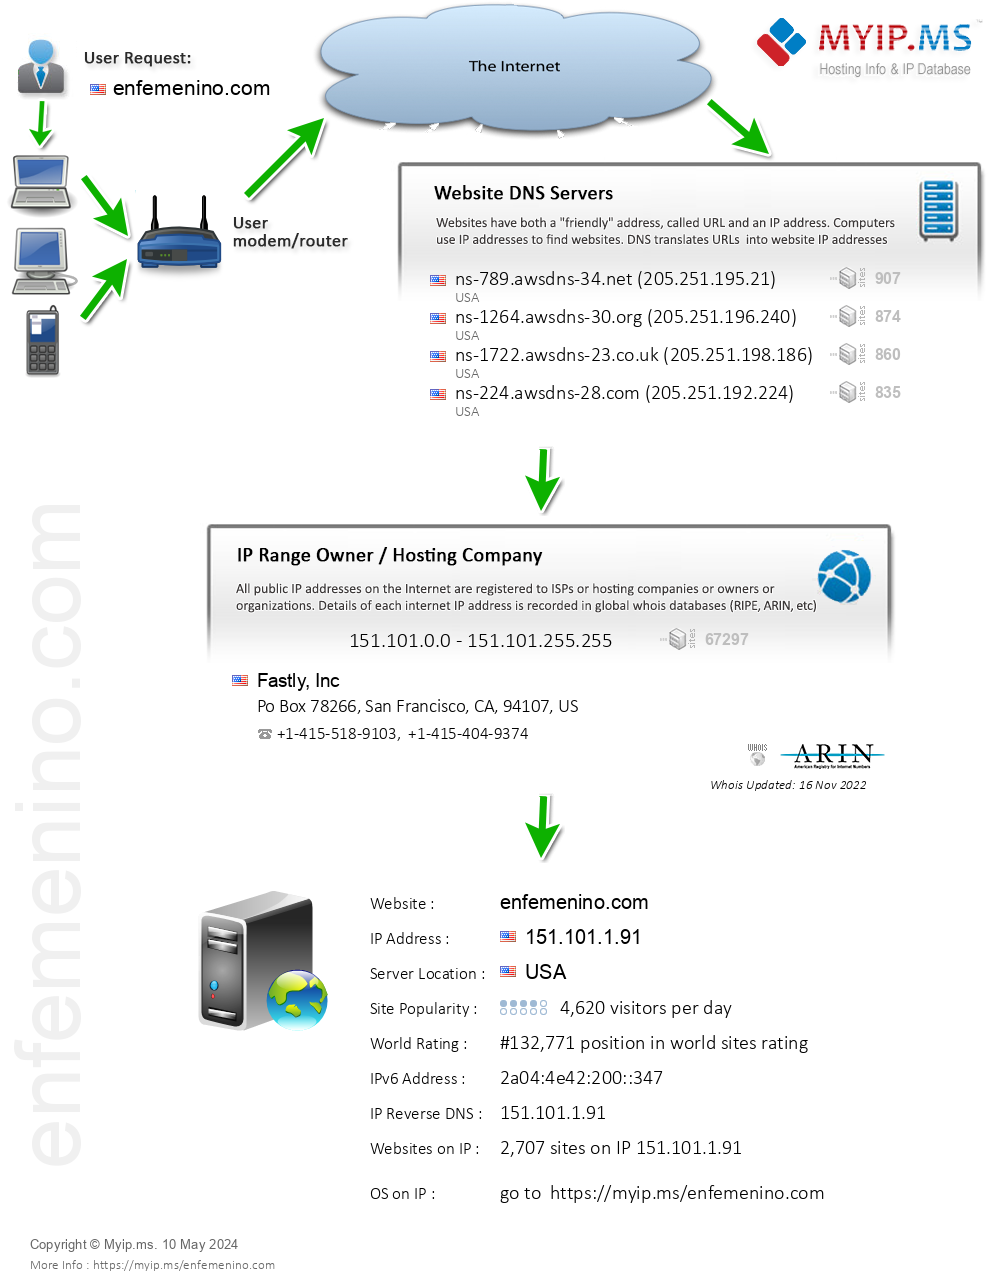 Enfemenino.com - Website Hosting Visual IP Diagram